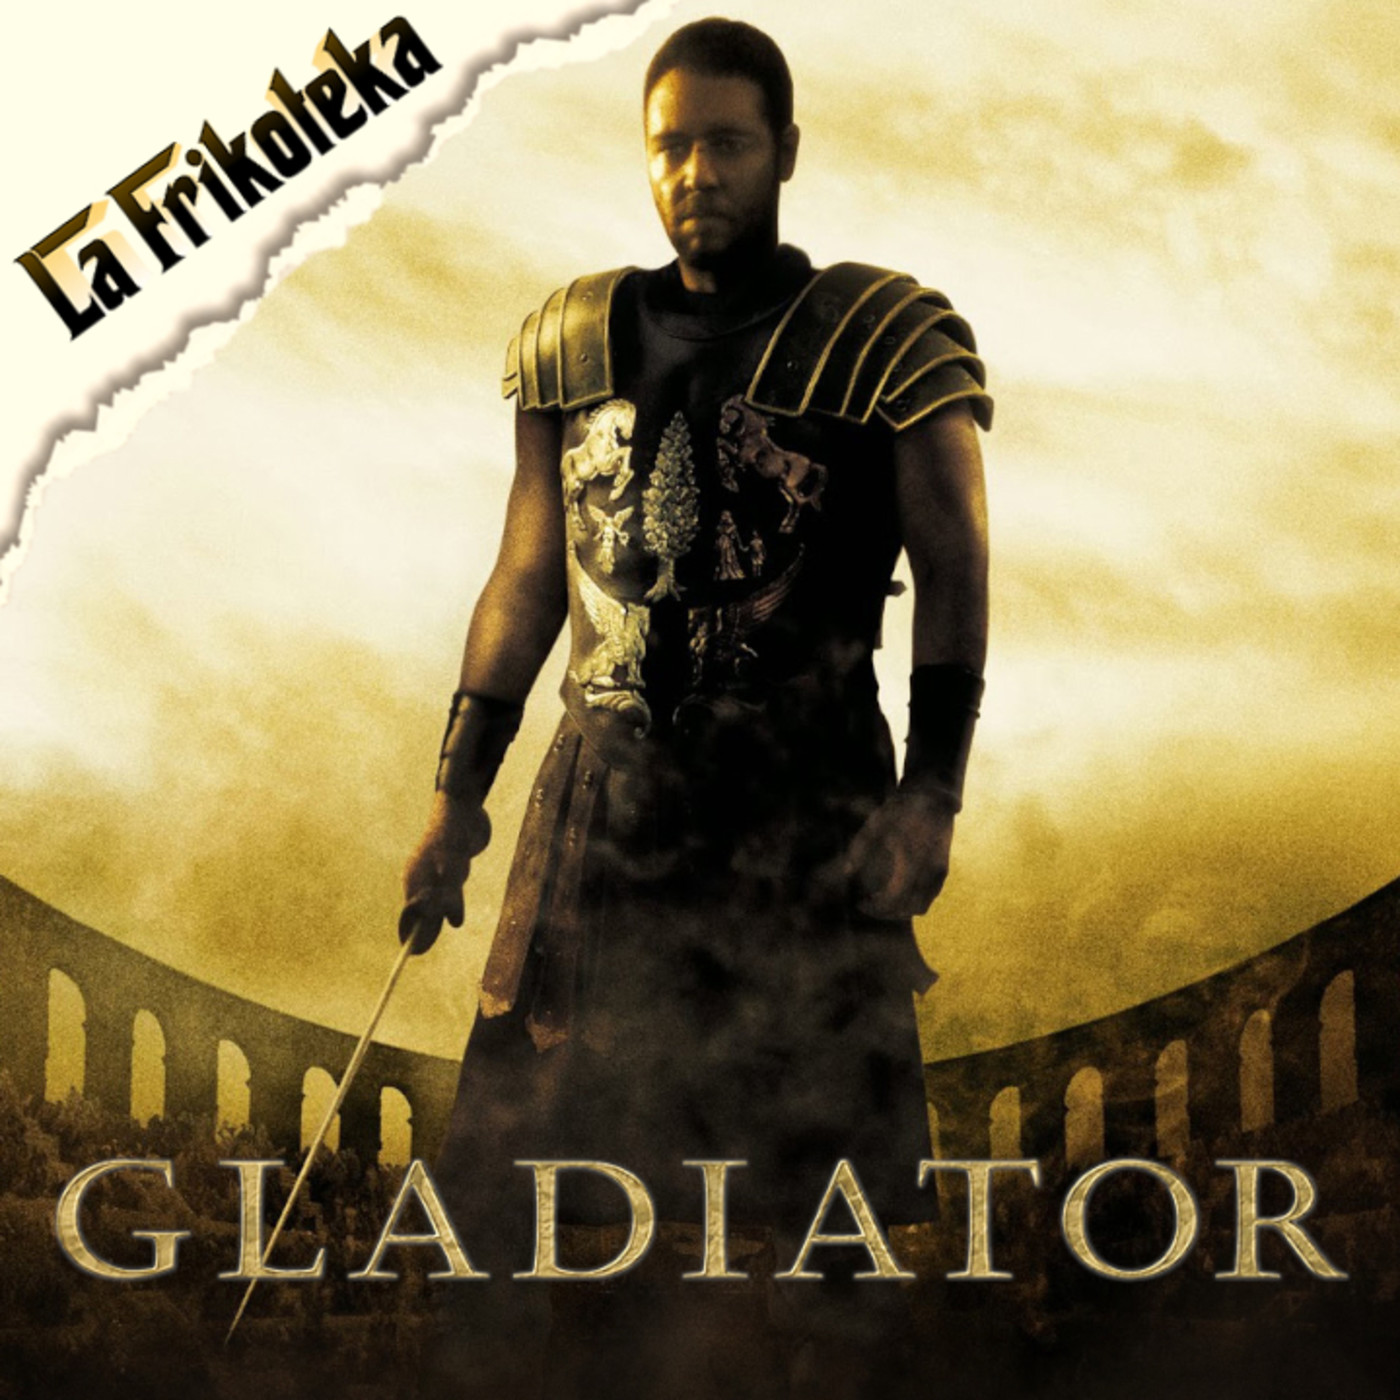 026 - Gladiator, el gladiador (2000) - Episodio exclusivo para mecenas